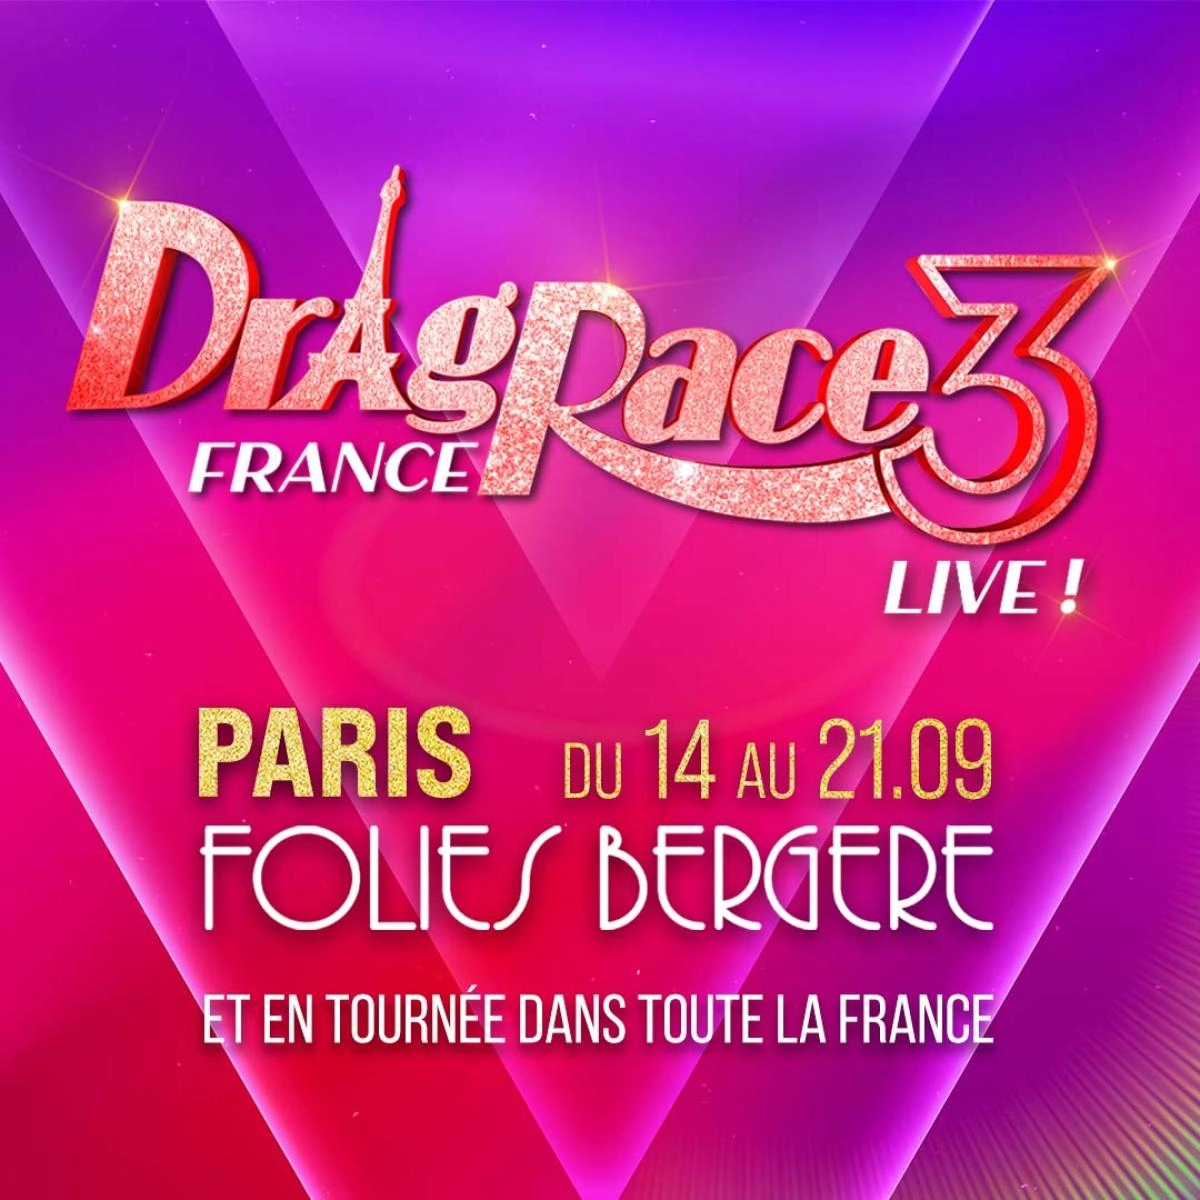 Drag Race France en Folies Bergere Tickets